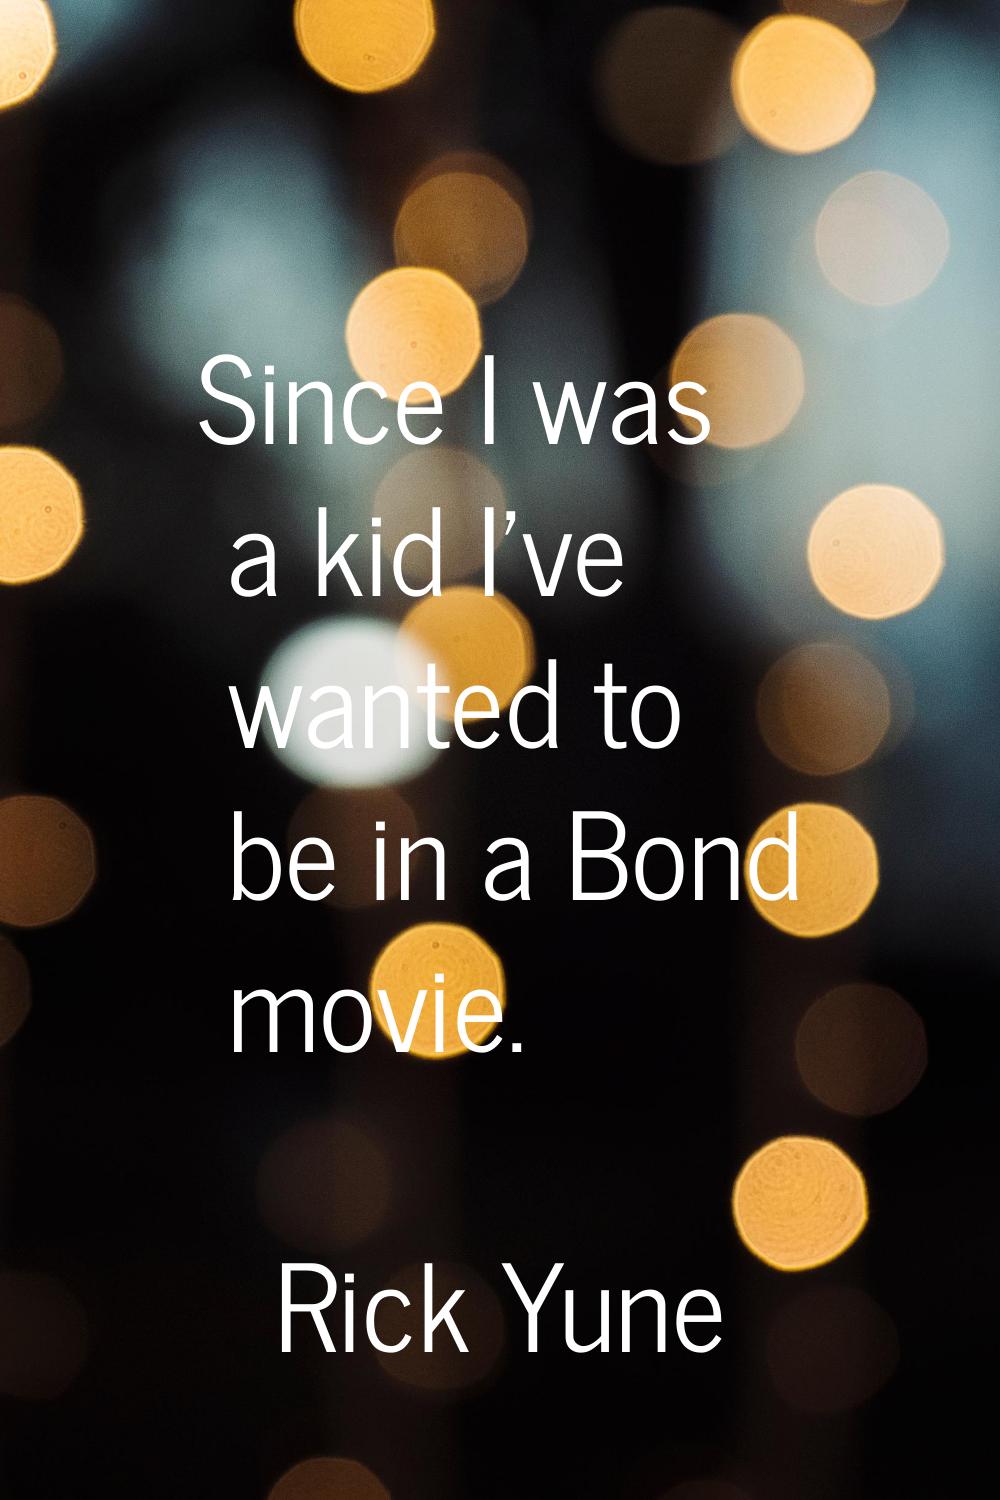 Since I was a kid I've wanted to be in a Bond movie.